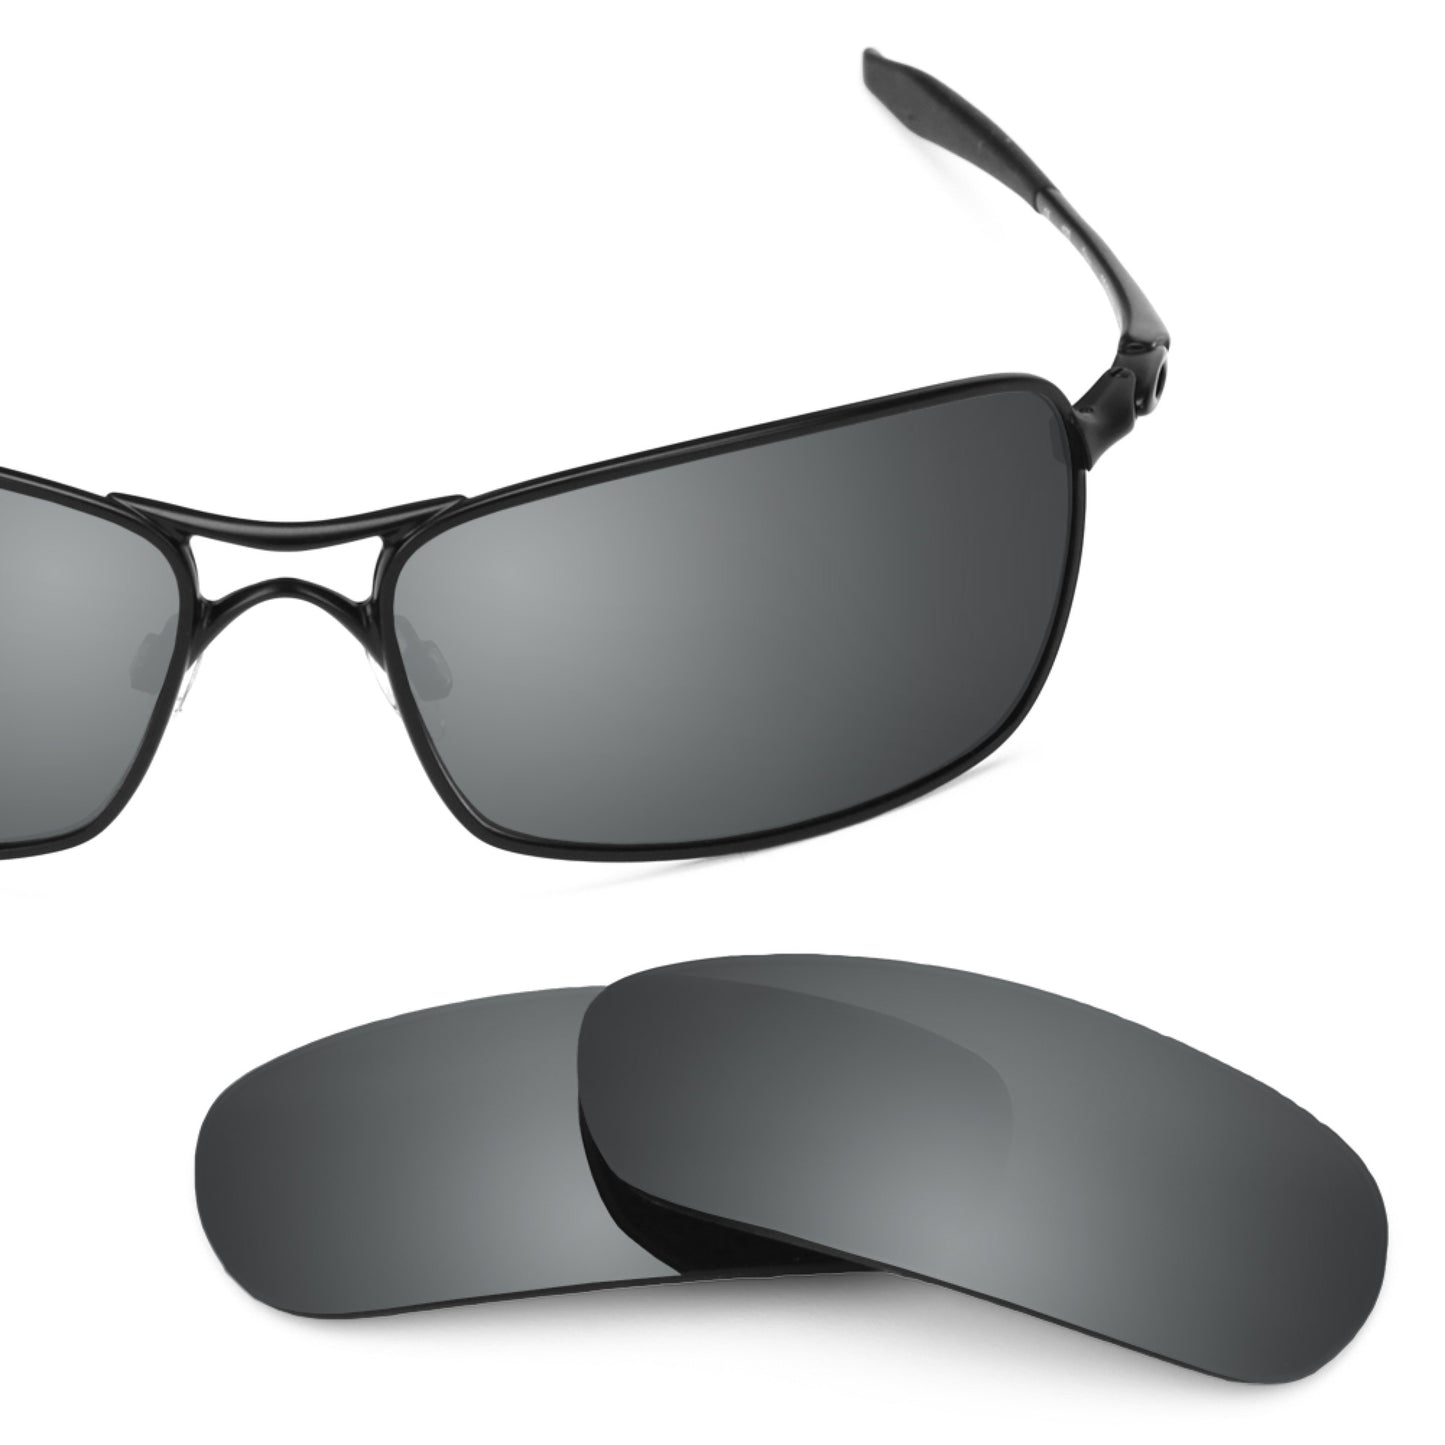 Revant replacement lenses for Oakley Crosshair 2.0 Non-Polarized Black Chrome